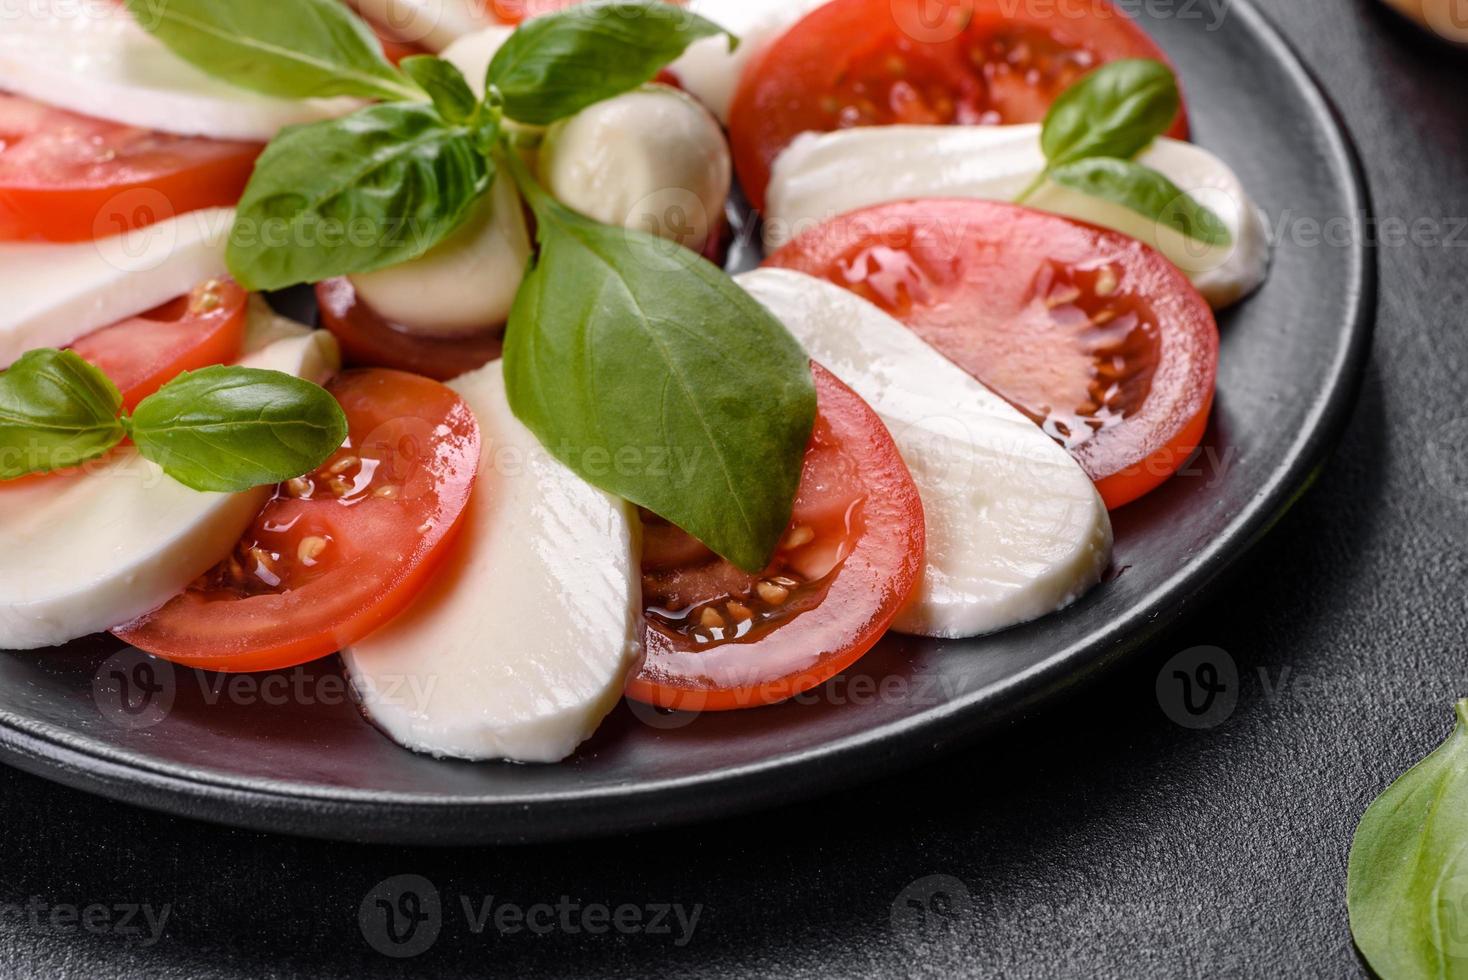 insalata caprese italiana con pomodori a fette, mozzarella foto